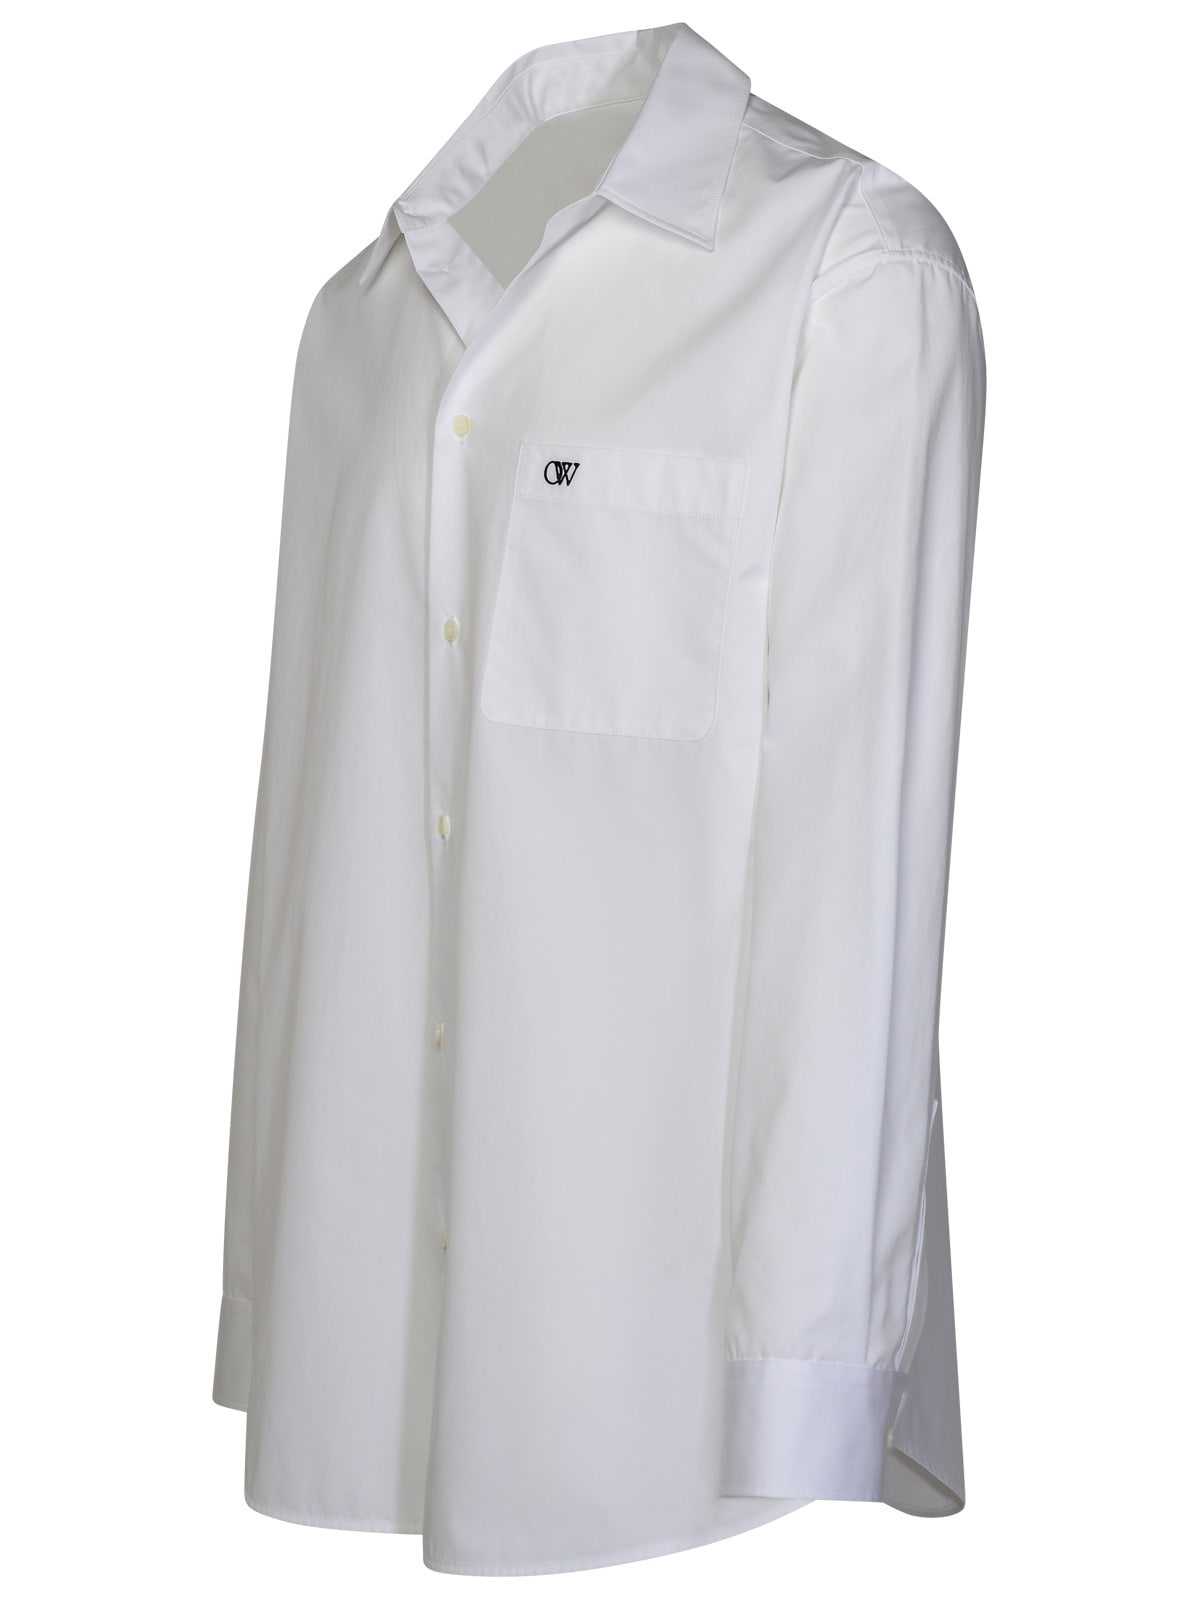 Shop Off-white Ow White Cotton Shirt